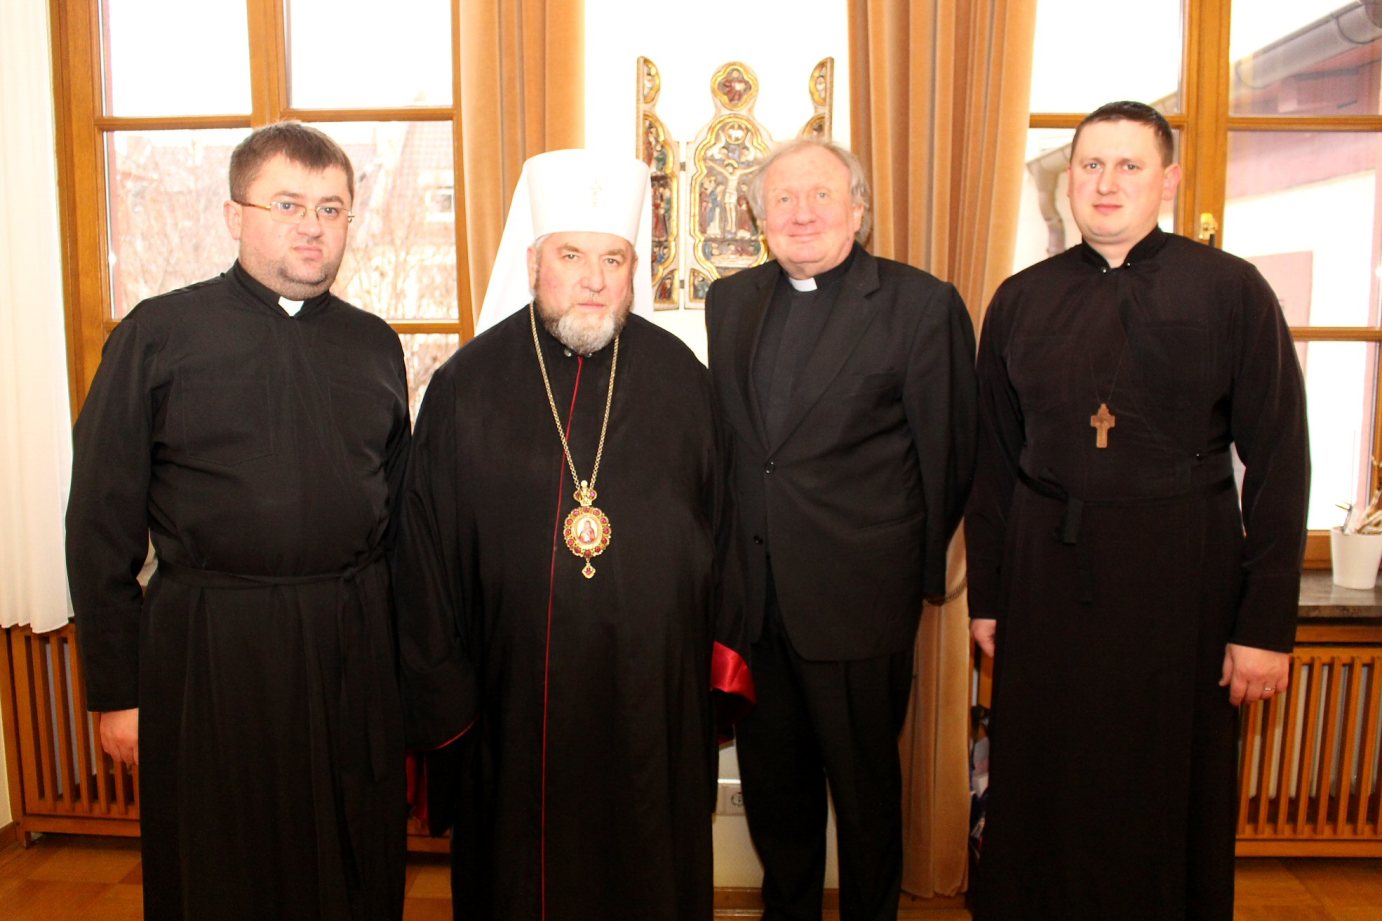 Mainz, 25.2.2014: Erzbischof Wassyl Semenjuk (2.v.l.) berichtete Geberalvikar Dietmar Giebelmann (2.v.r.) über die derzeitige Situation in der Ukraine. (c) Bistum Mainz / Blum